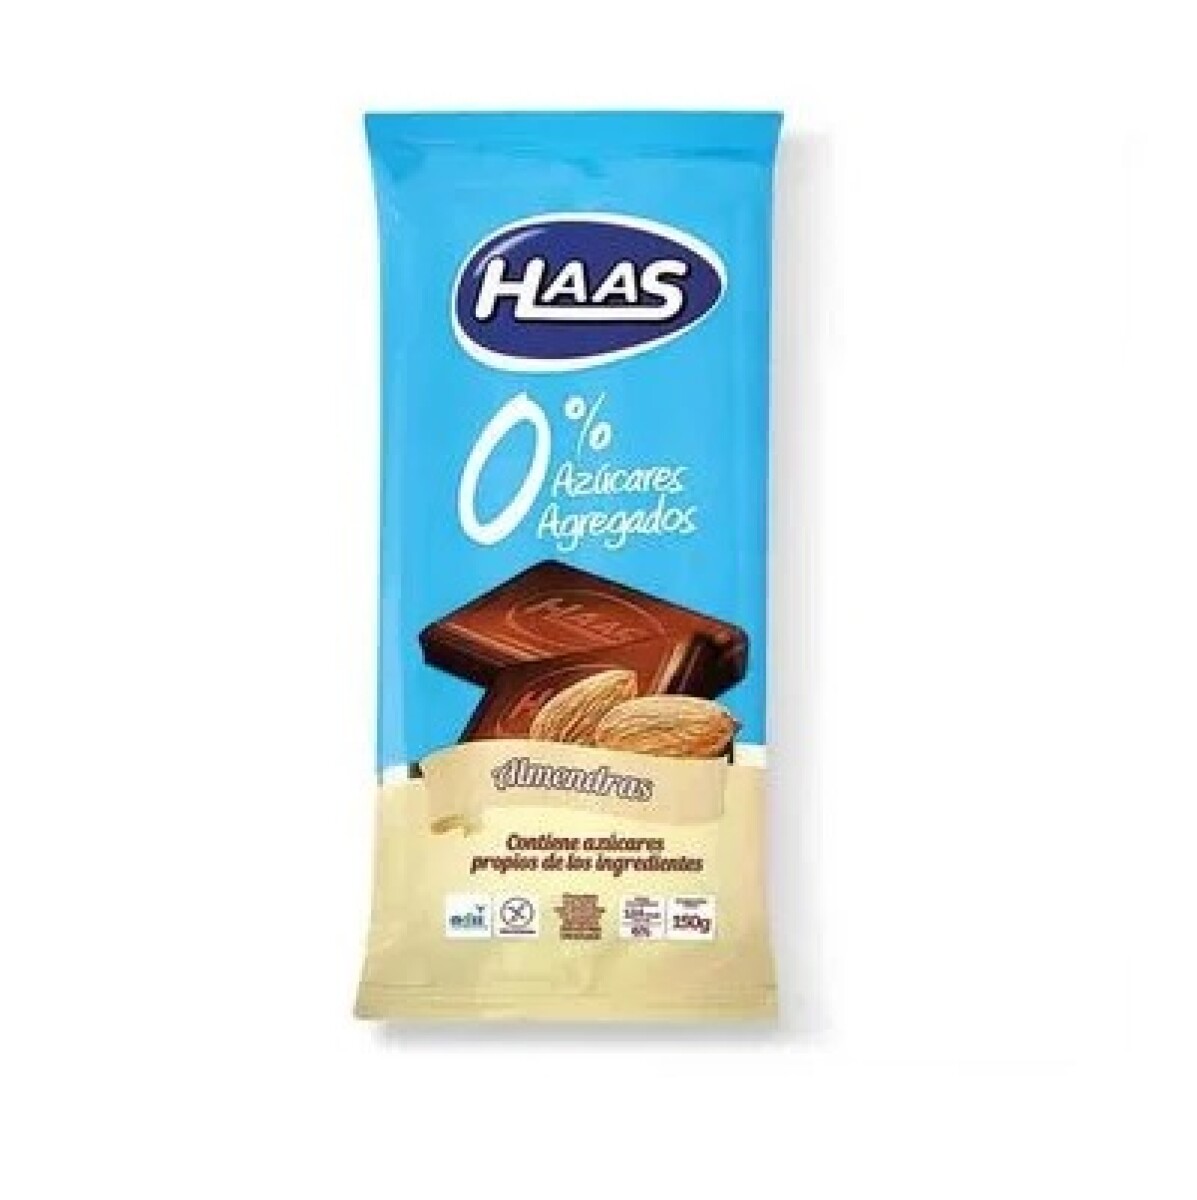 Chocolate Haas Con Almendras 0% Azúcar 150 Grs. 